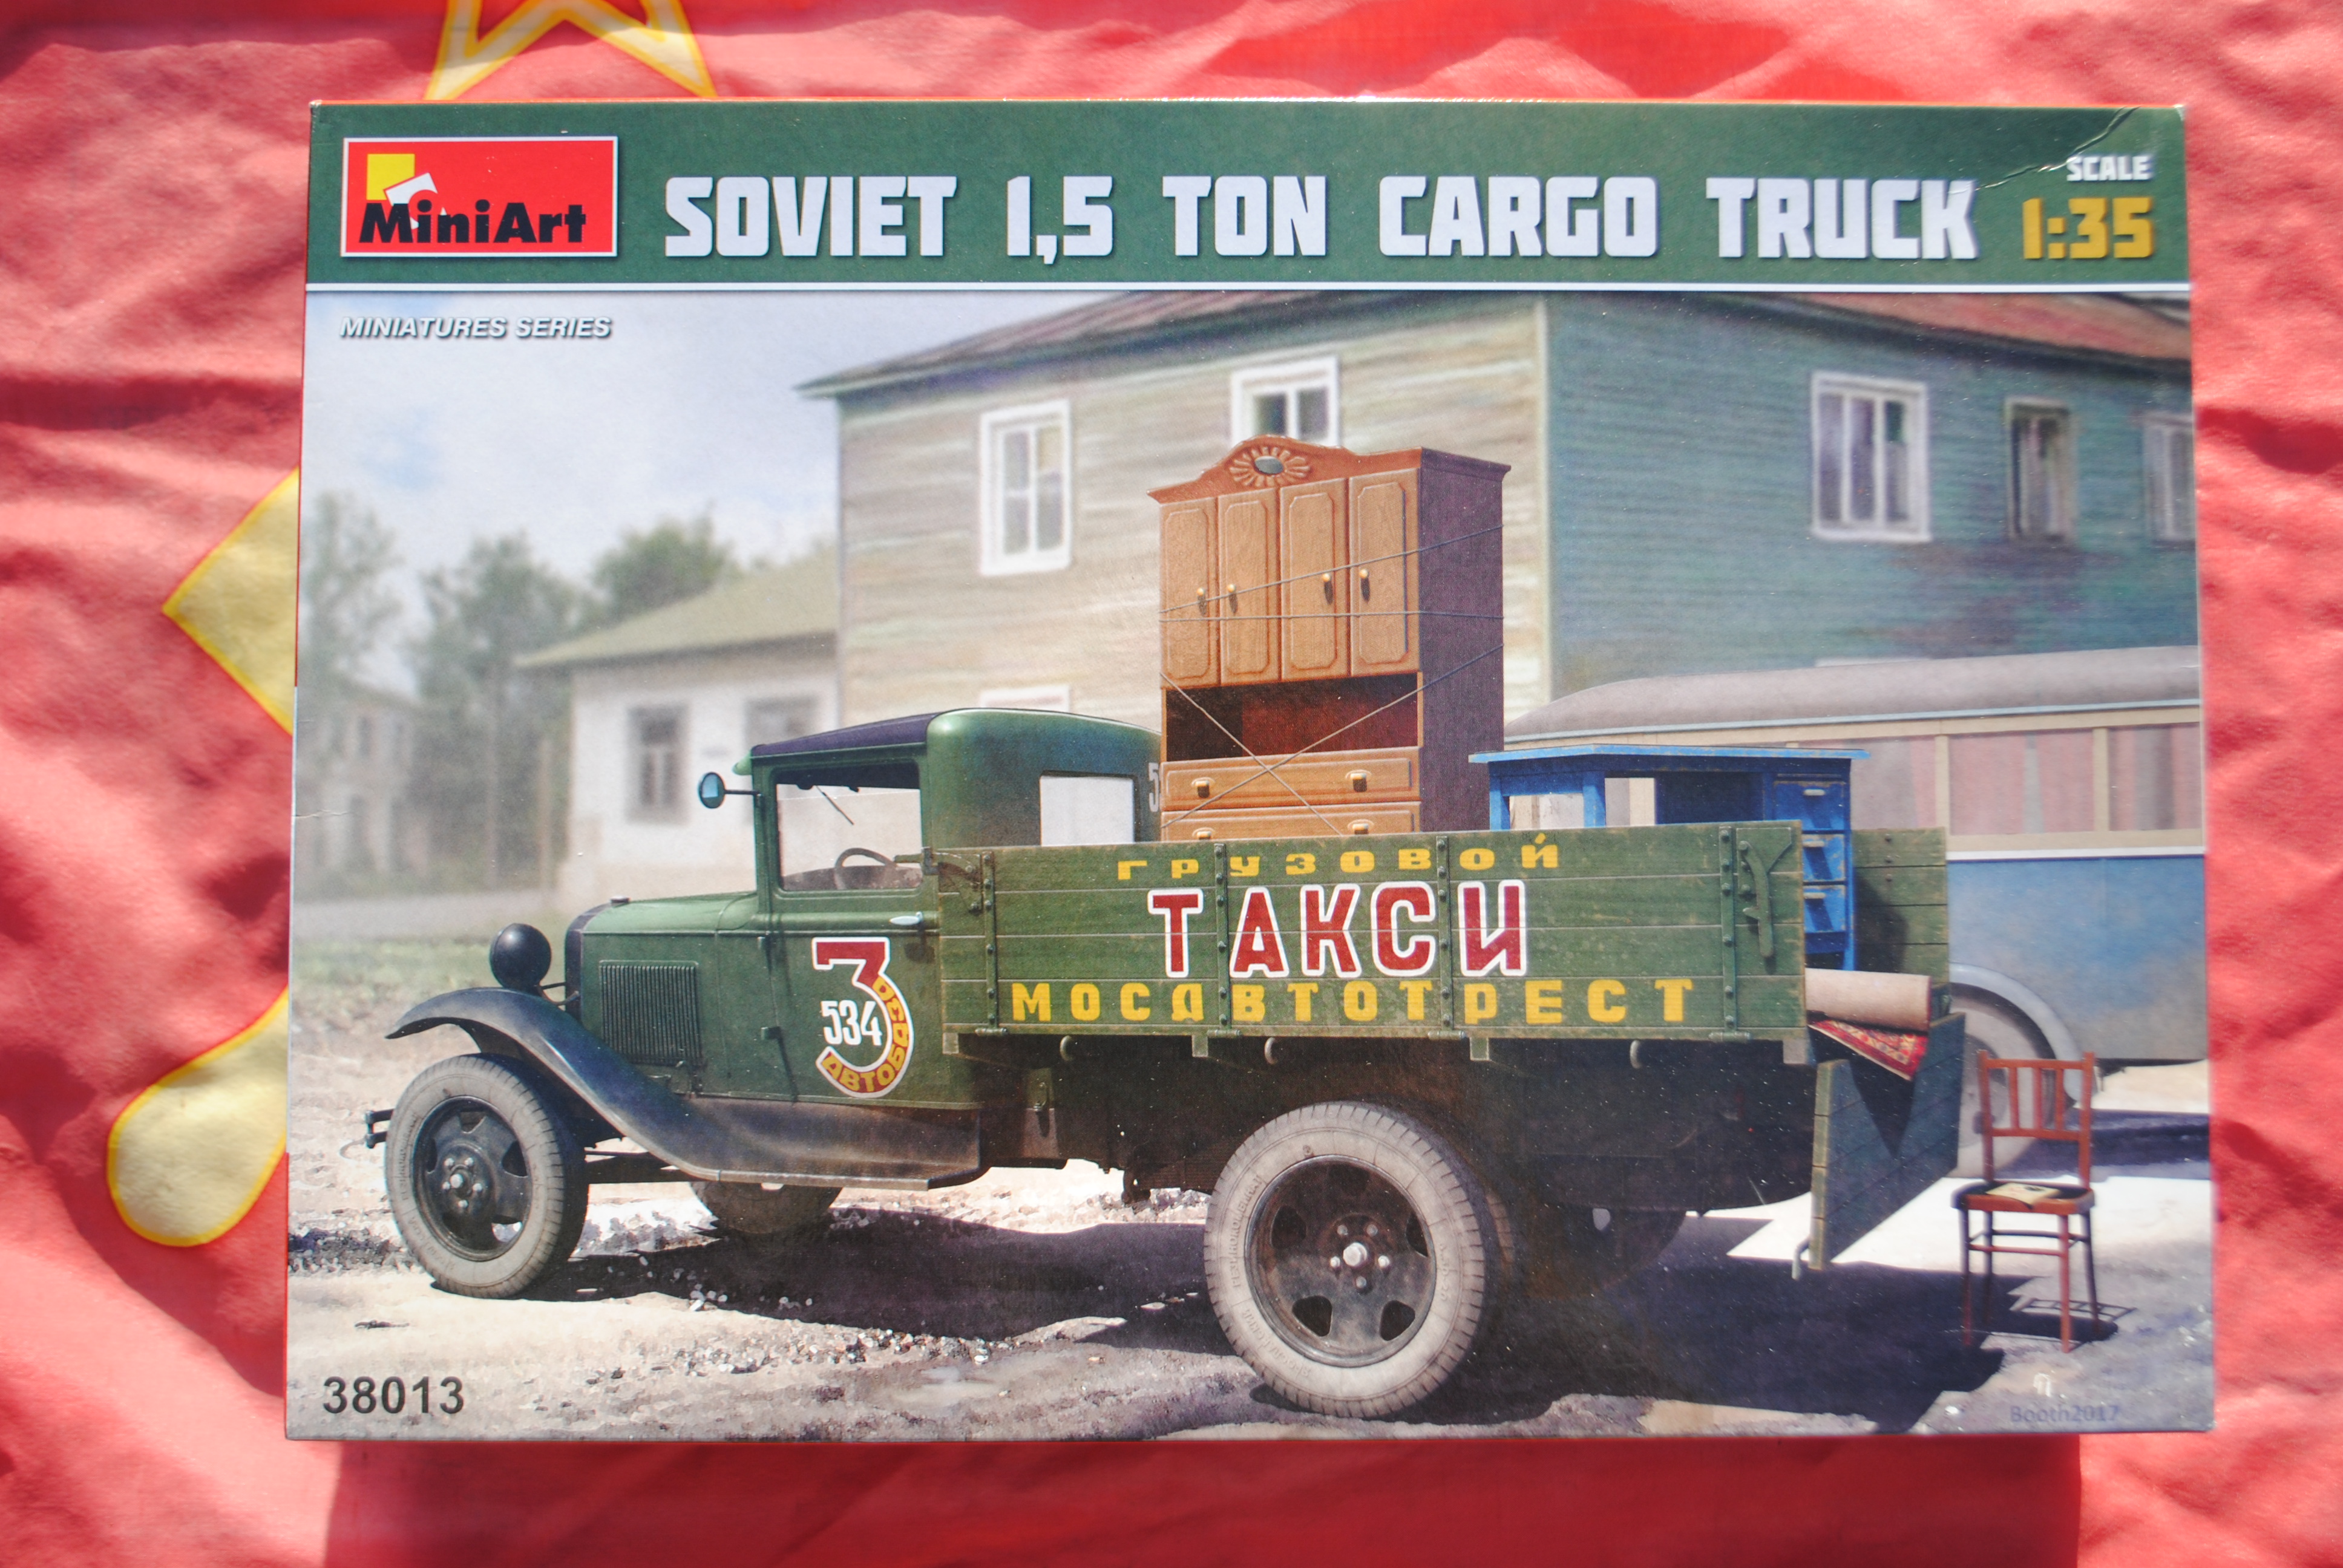 Mini Art 38013 SOVIET 1,5 TON CARGO TRUCK